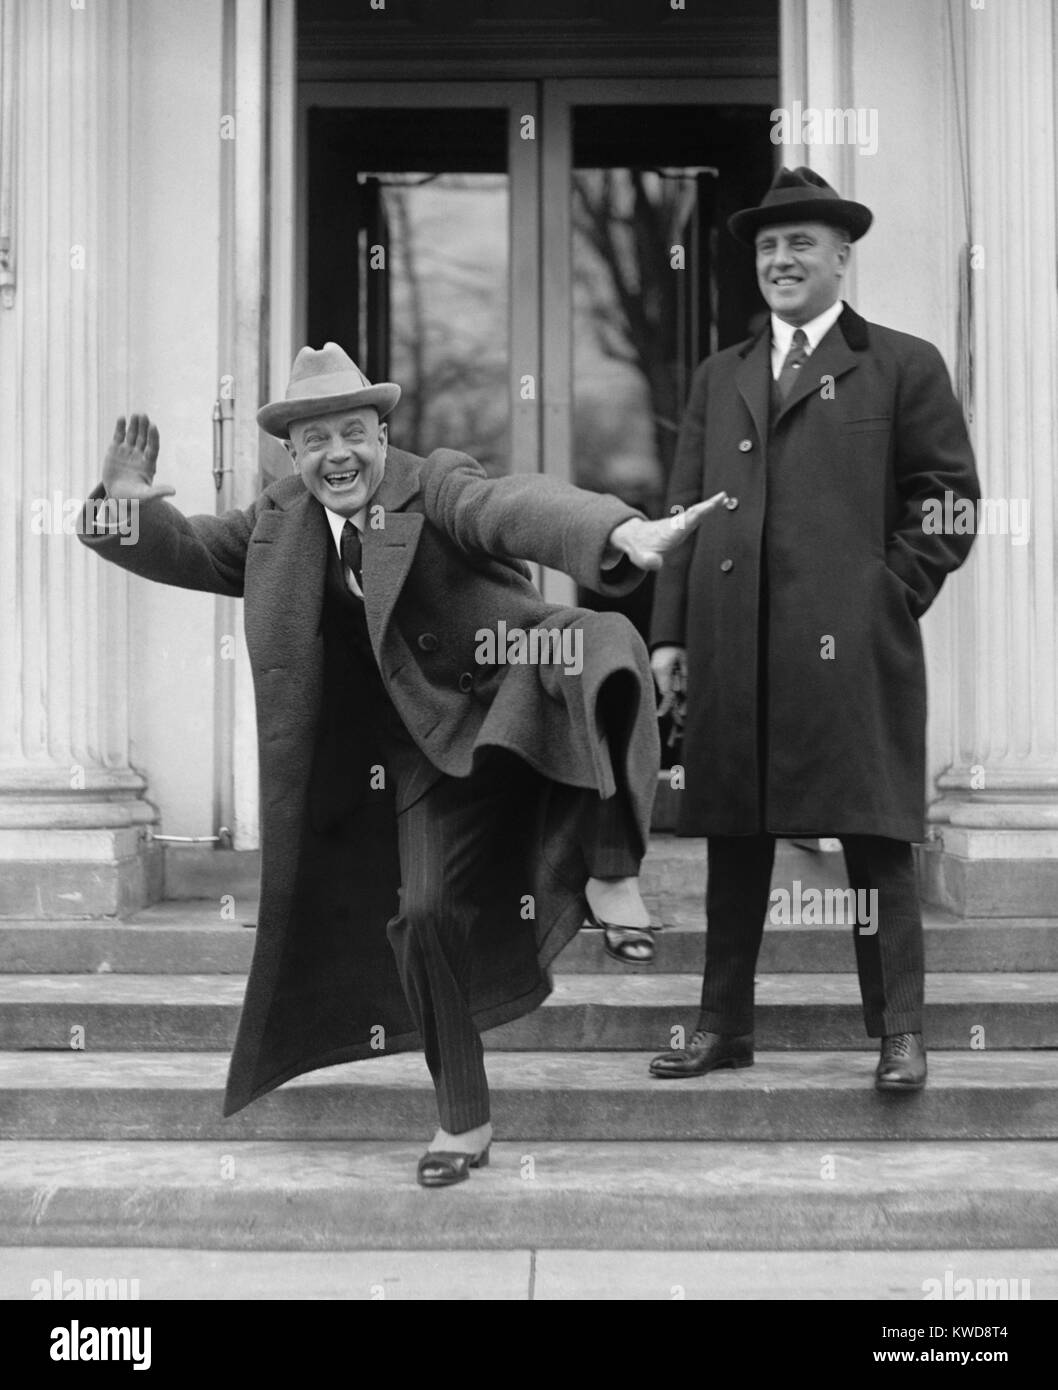 Billy dimanche frappe un gyrating posent pour un photographe de presse à la Maison Blanche, le 20 février 1922 (BSLOC 2016 8 119) Banque D'Images